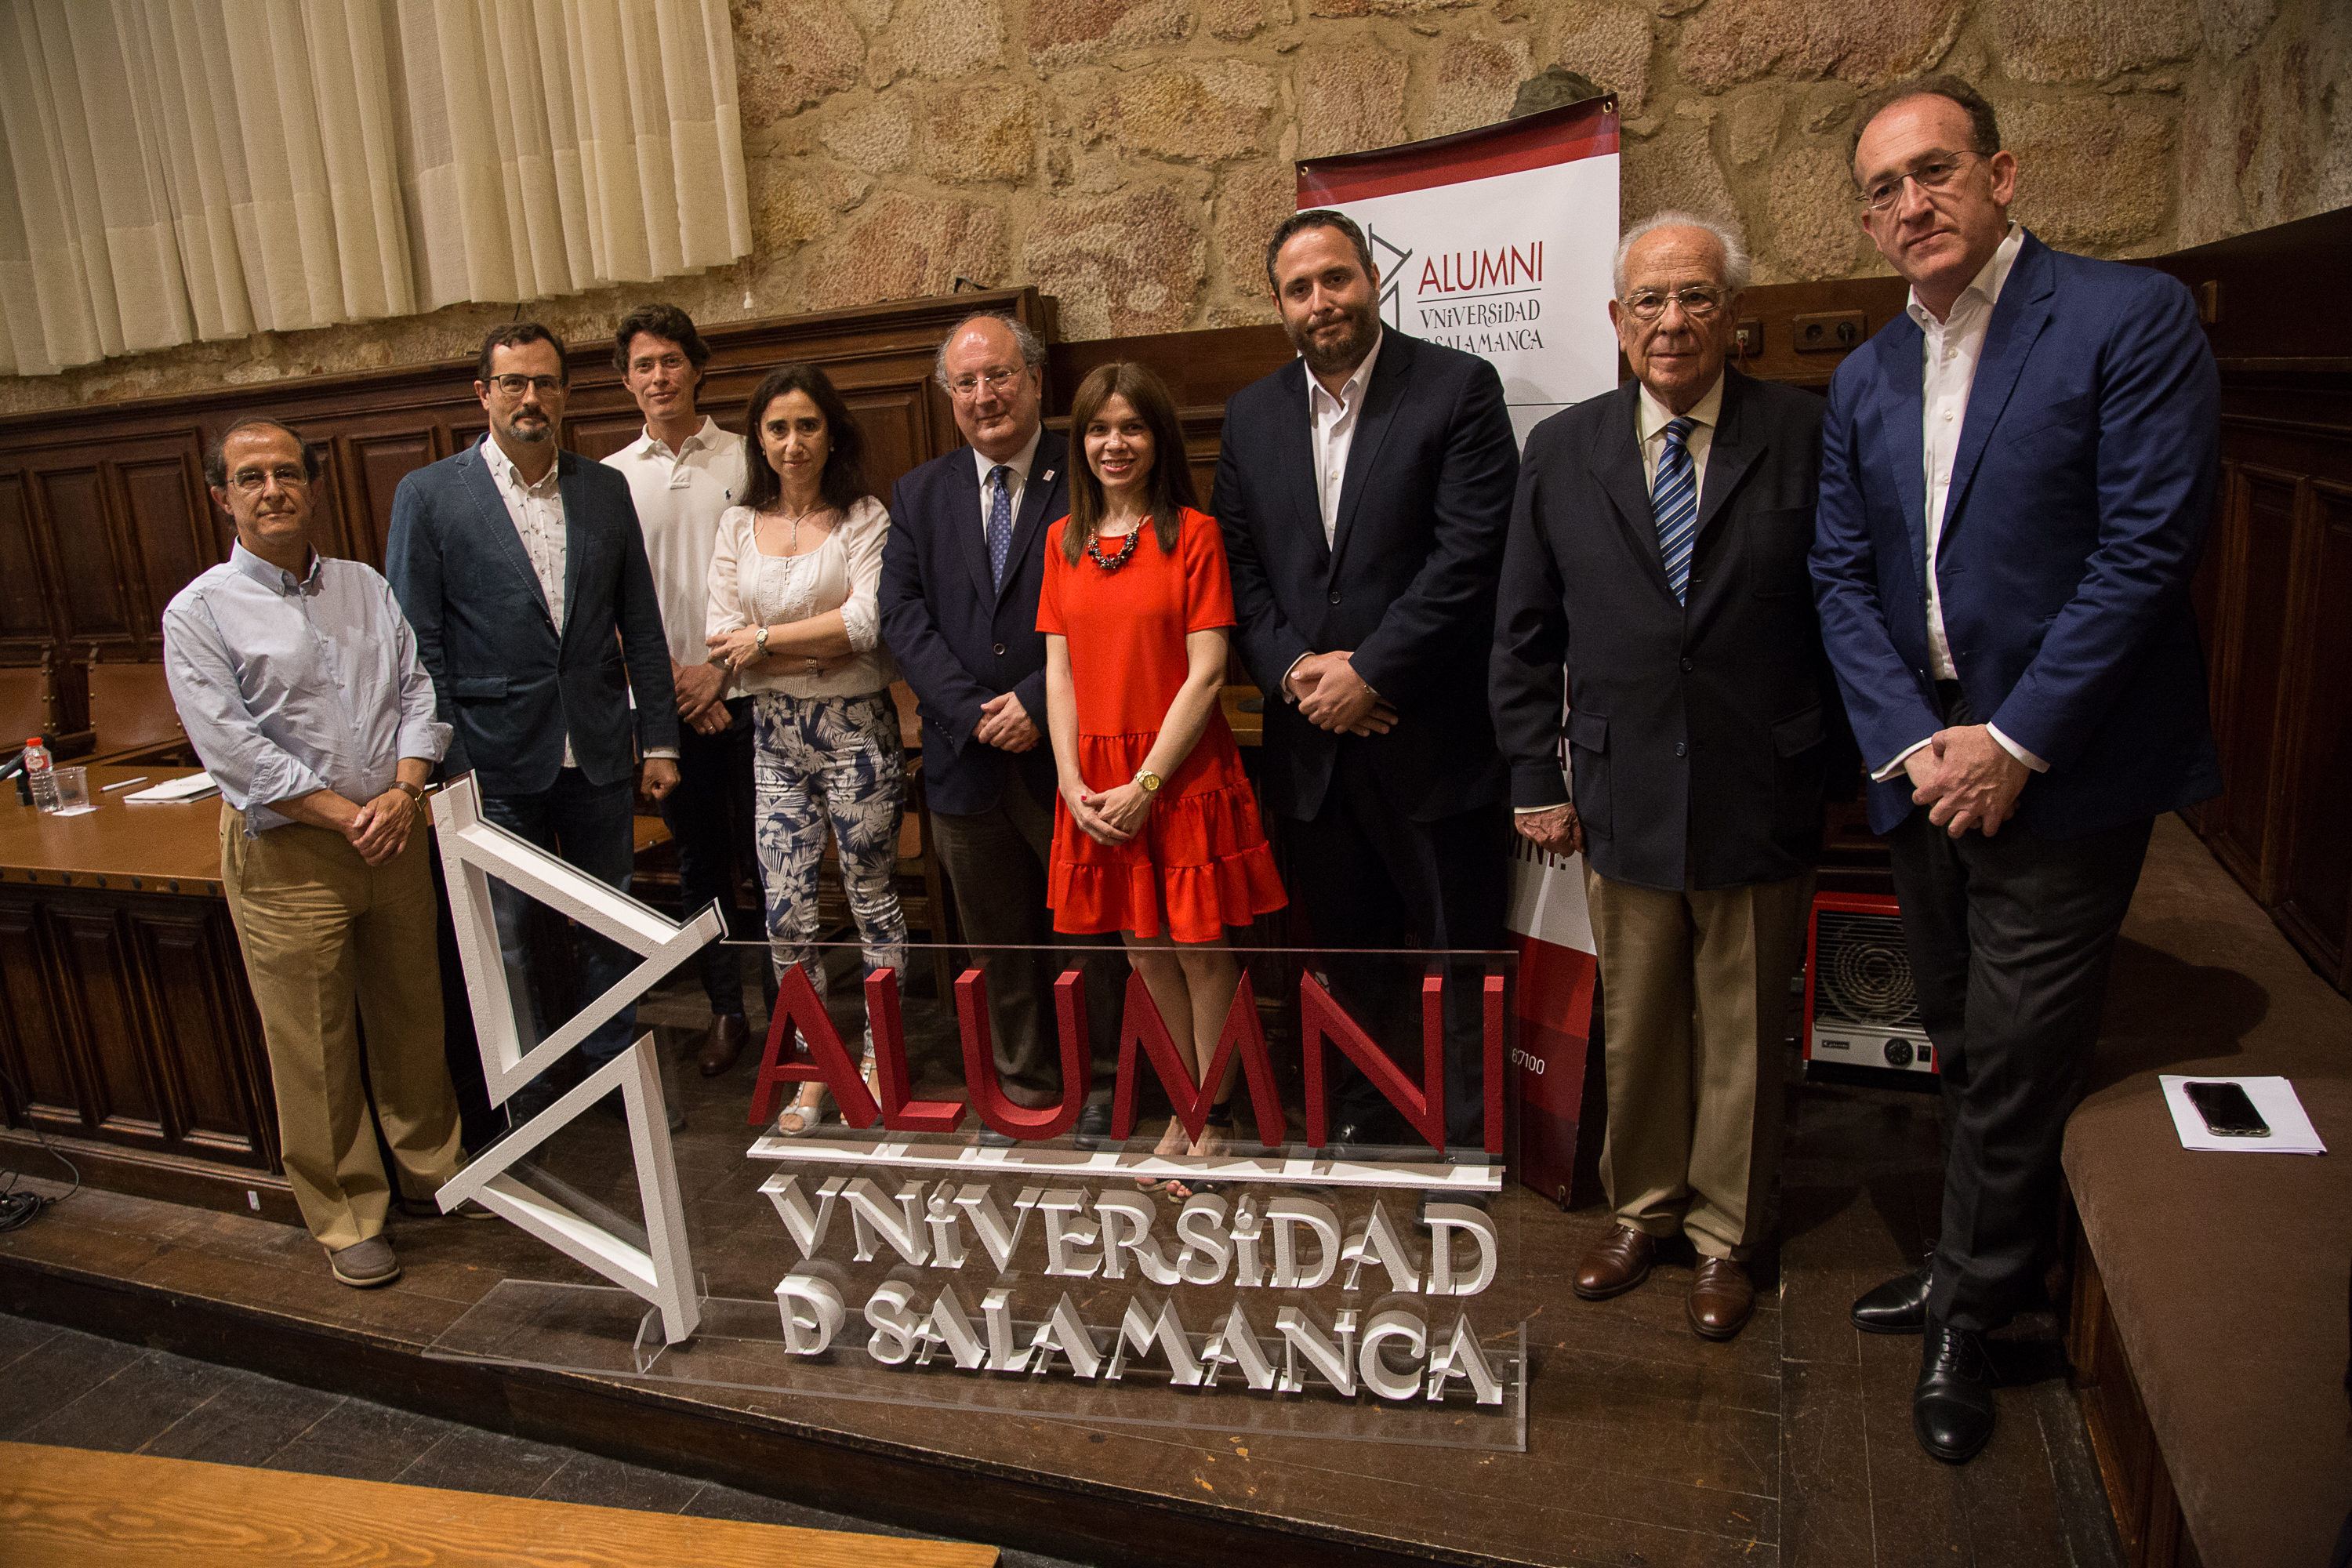 Alumni nombra socios de honor al miembro de la Real Academia Española Paz Battaner y al expresidente del Parlamento Europeo José María Gil-Robles 